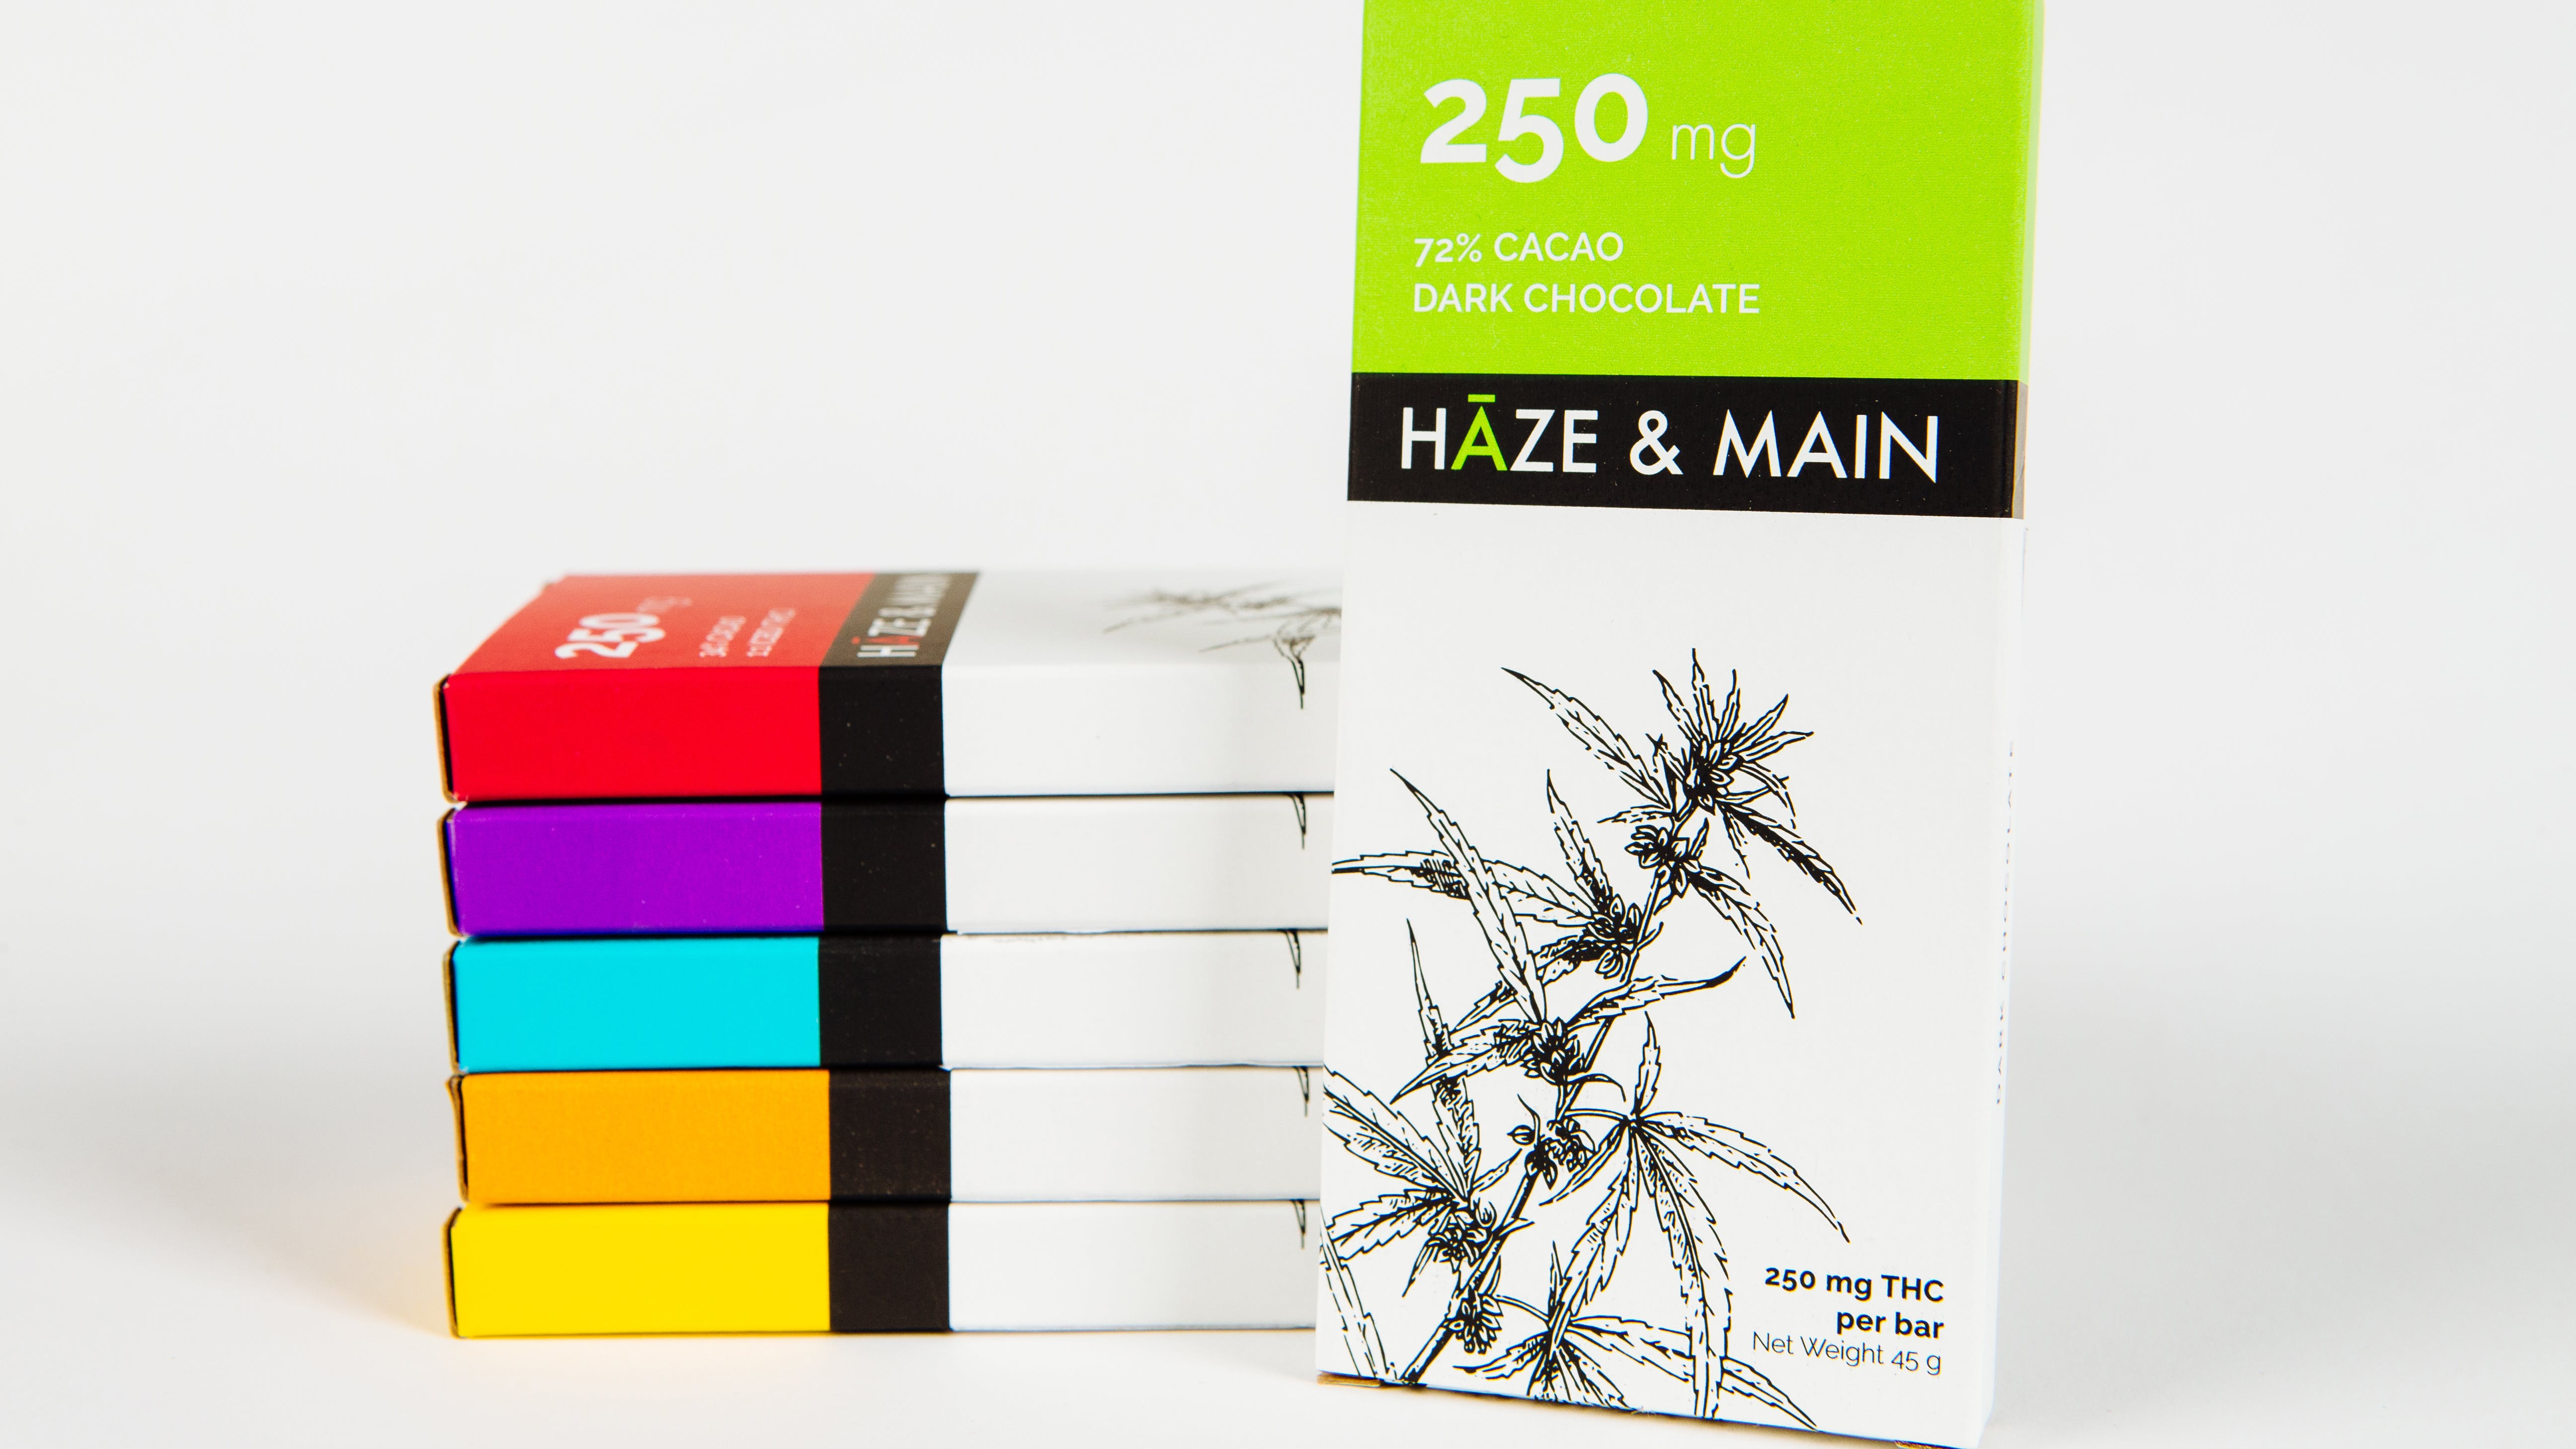 edible-haze-a-main-dark-chocolate-bar-250mg